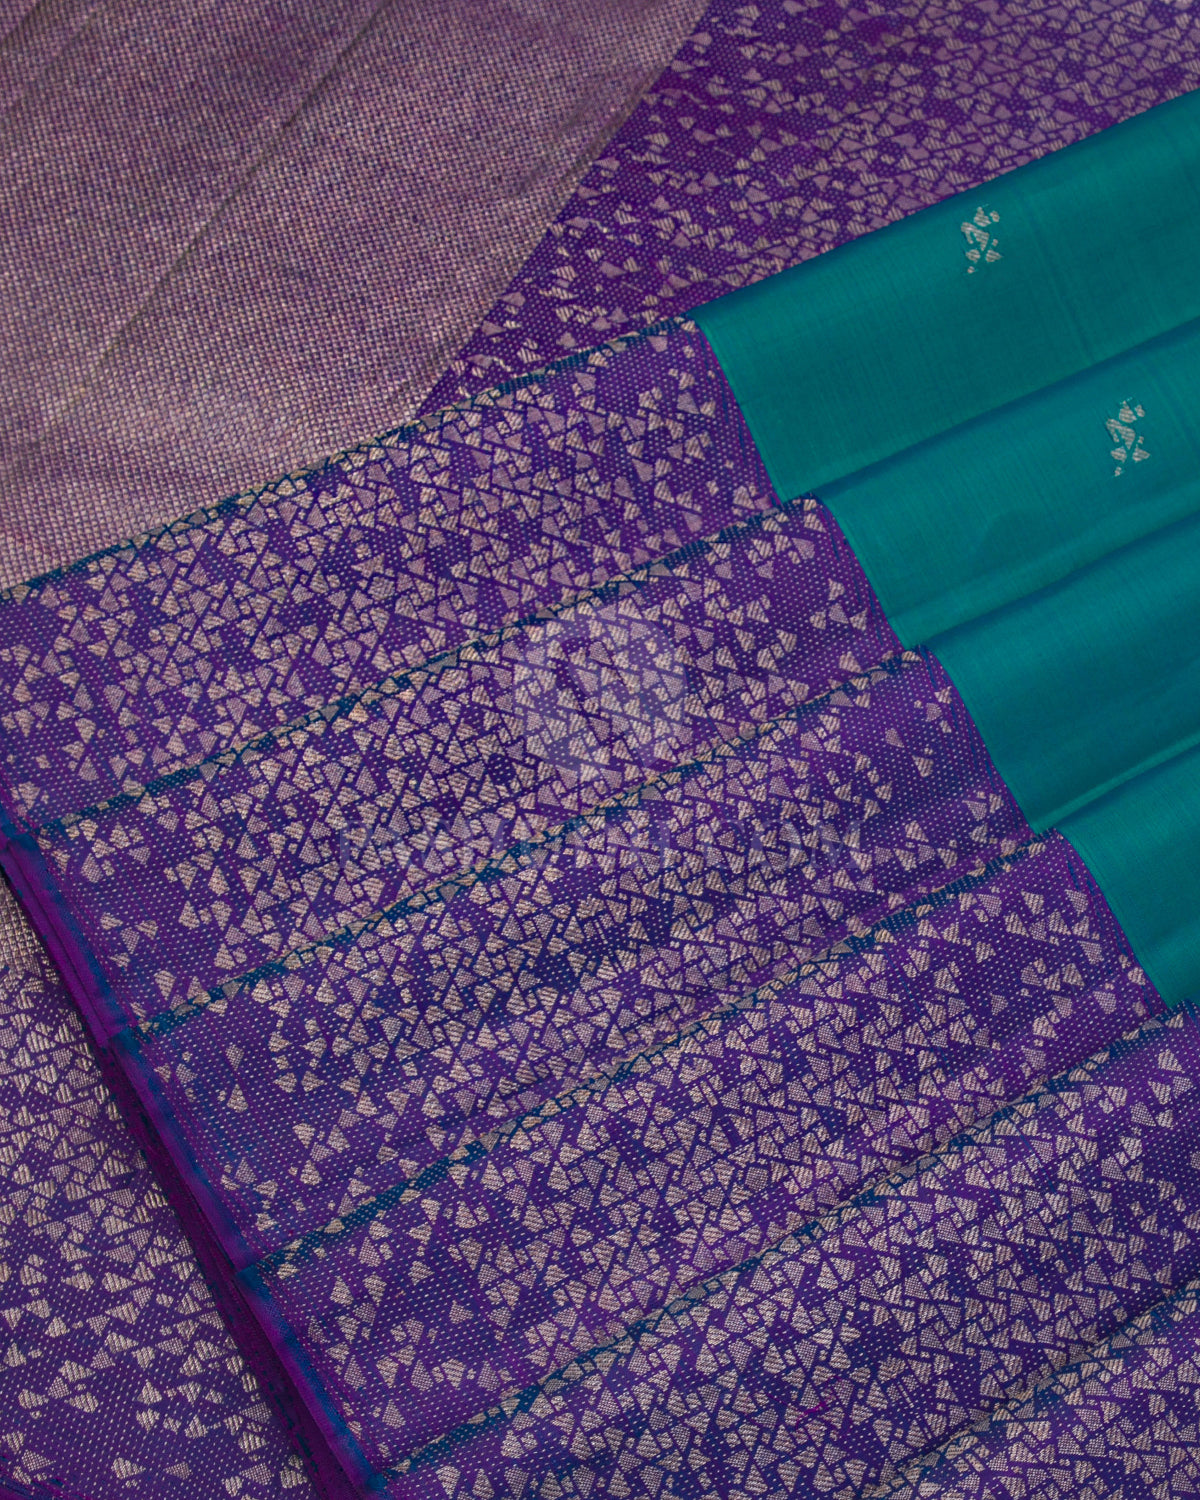 Rama Green & Blue Violet Kanjivaram Silk Saree - S1004 - View 4